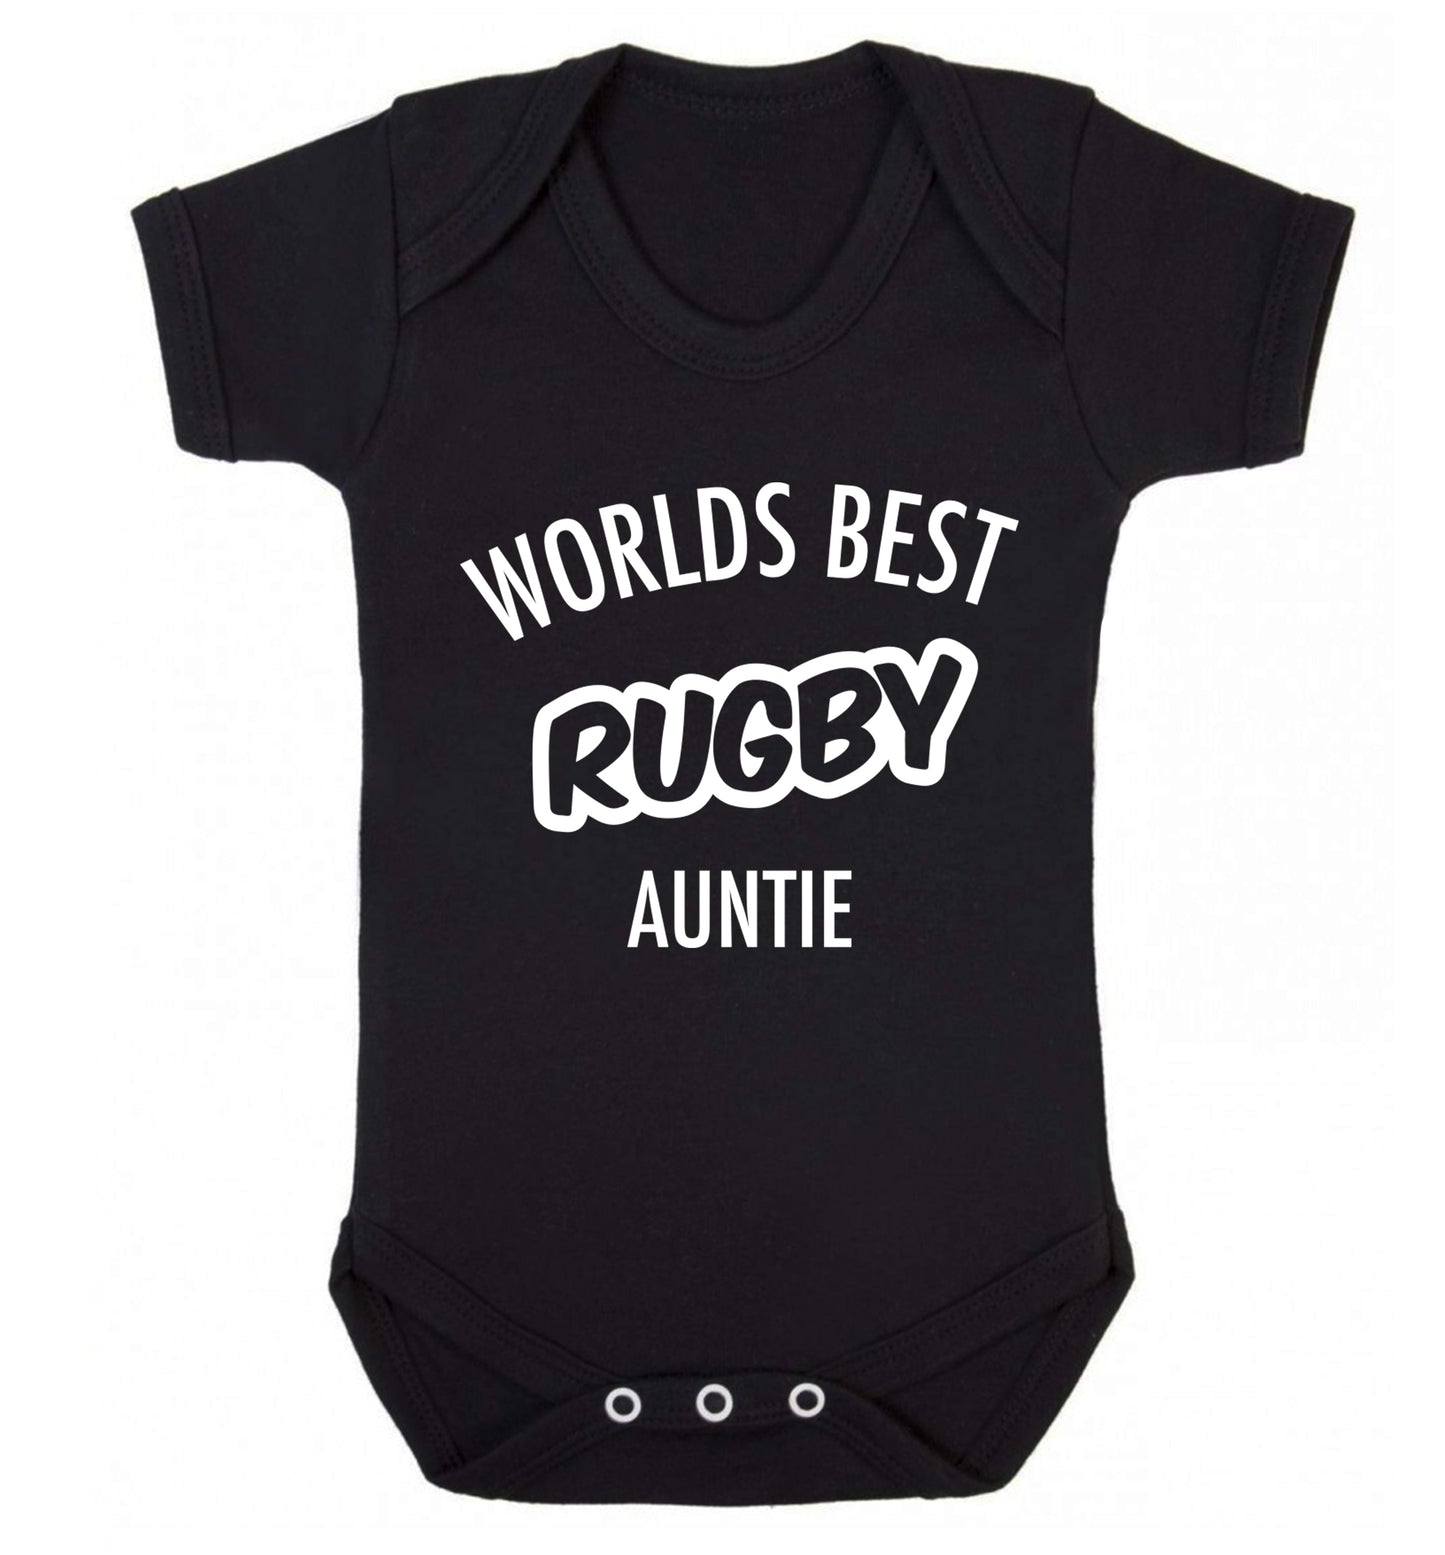 Worlds best rugby auntie Baby Vest black 18-24 months